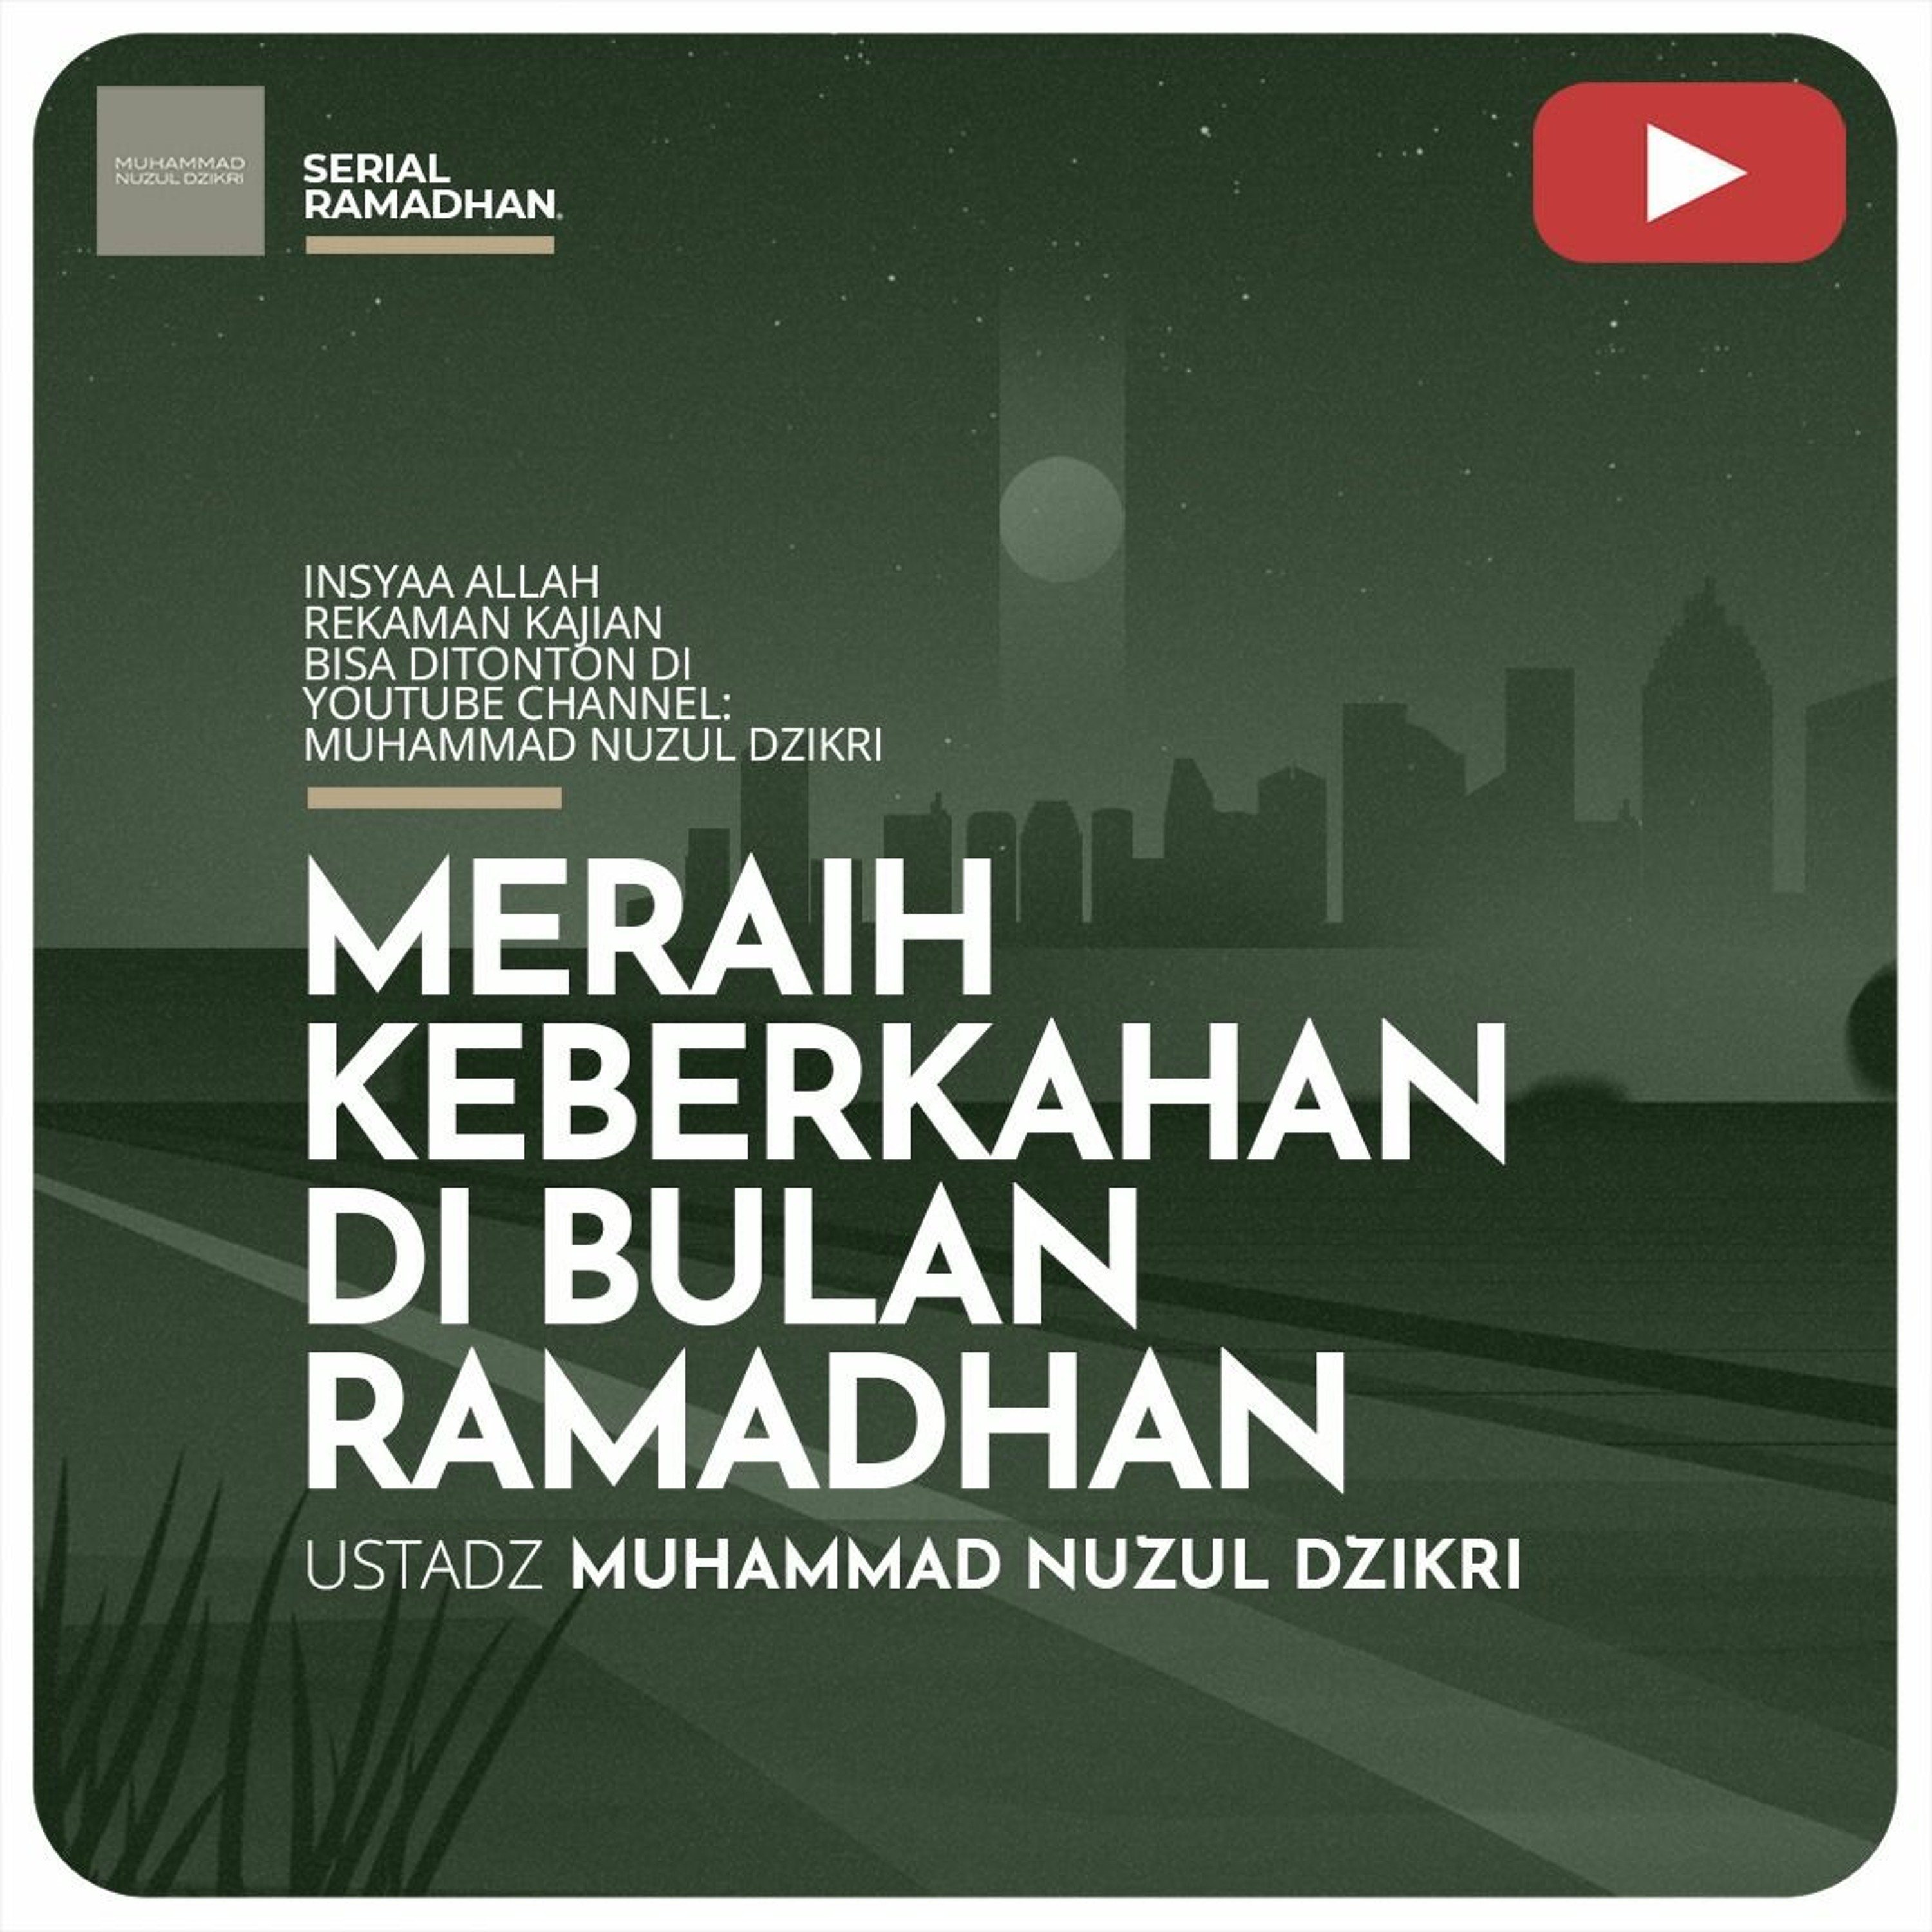 Serial Ramadhan 11. 